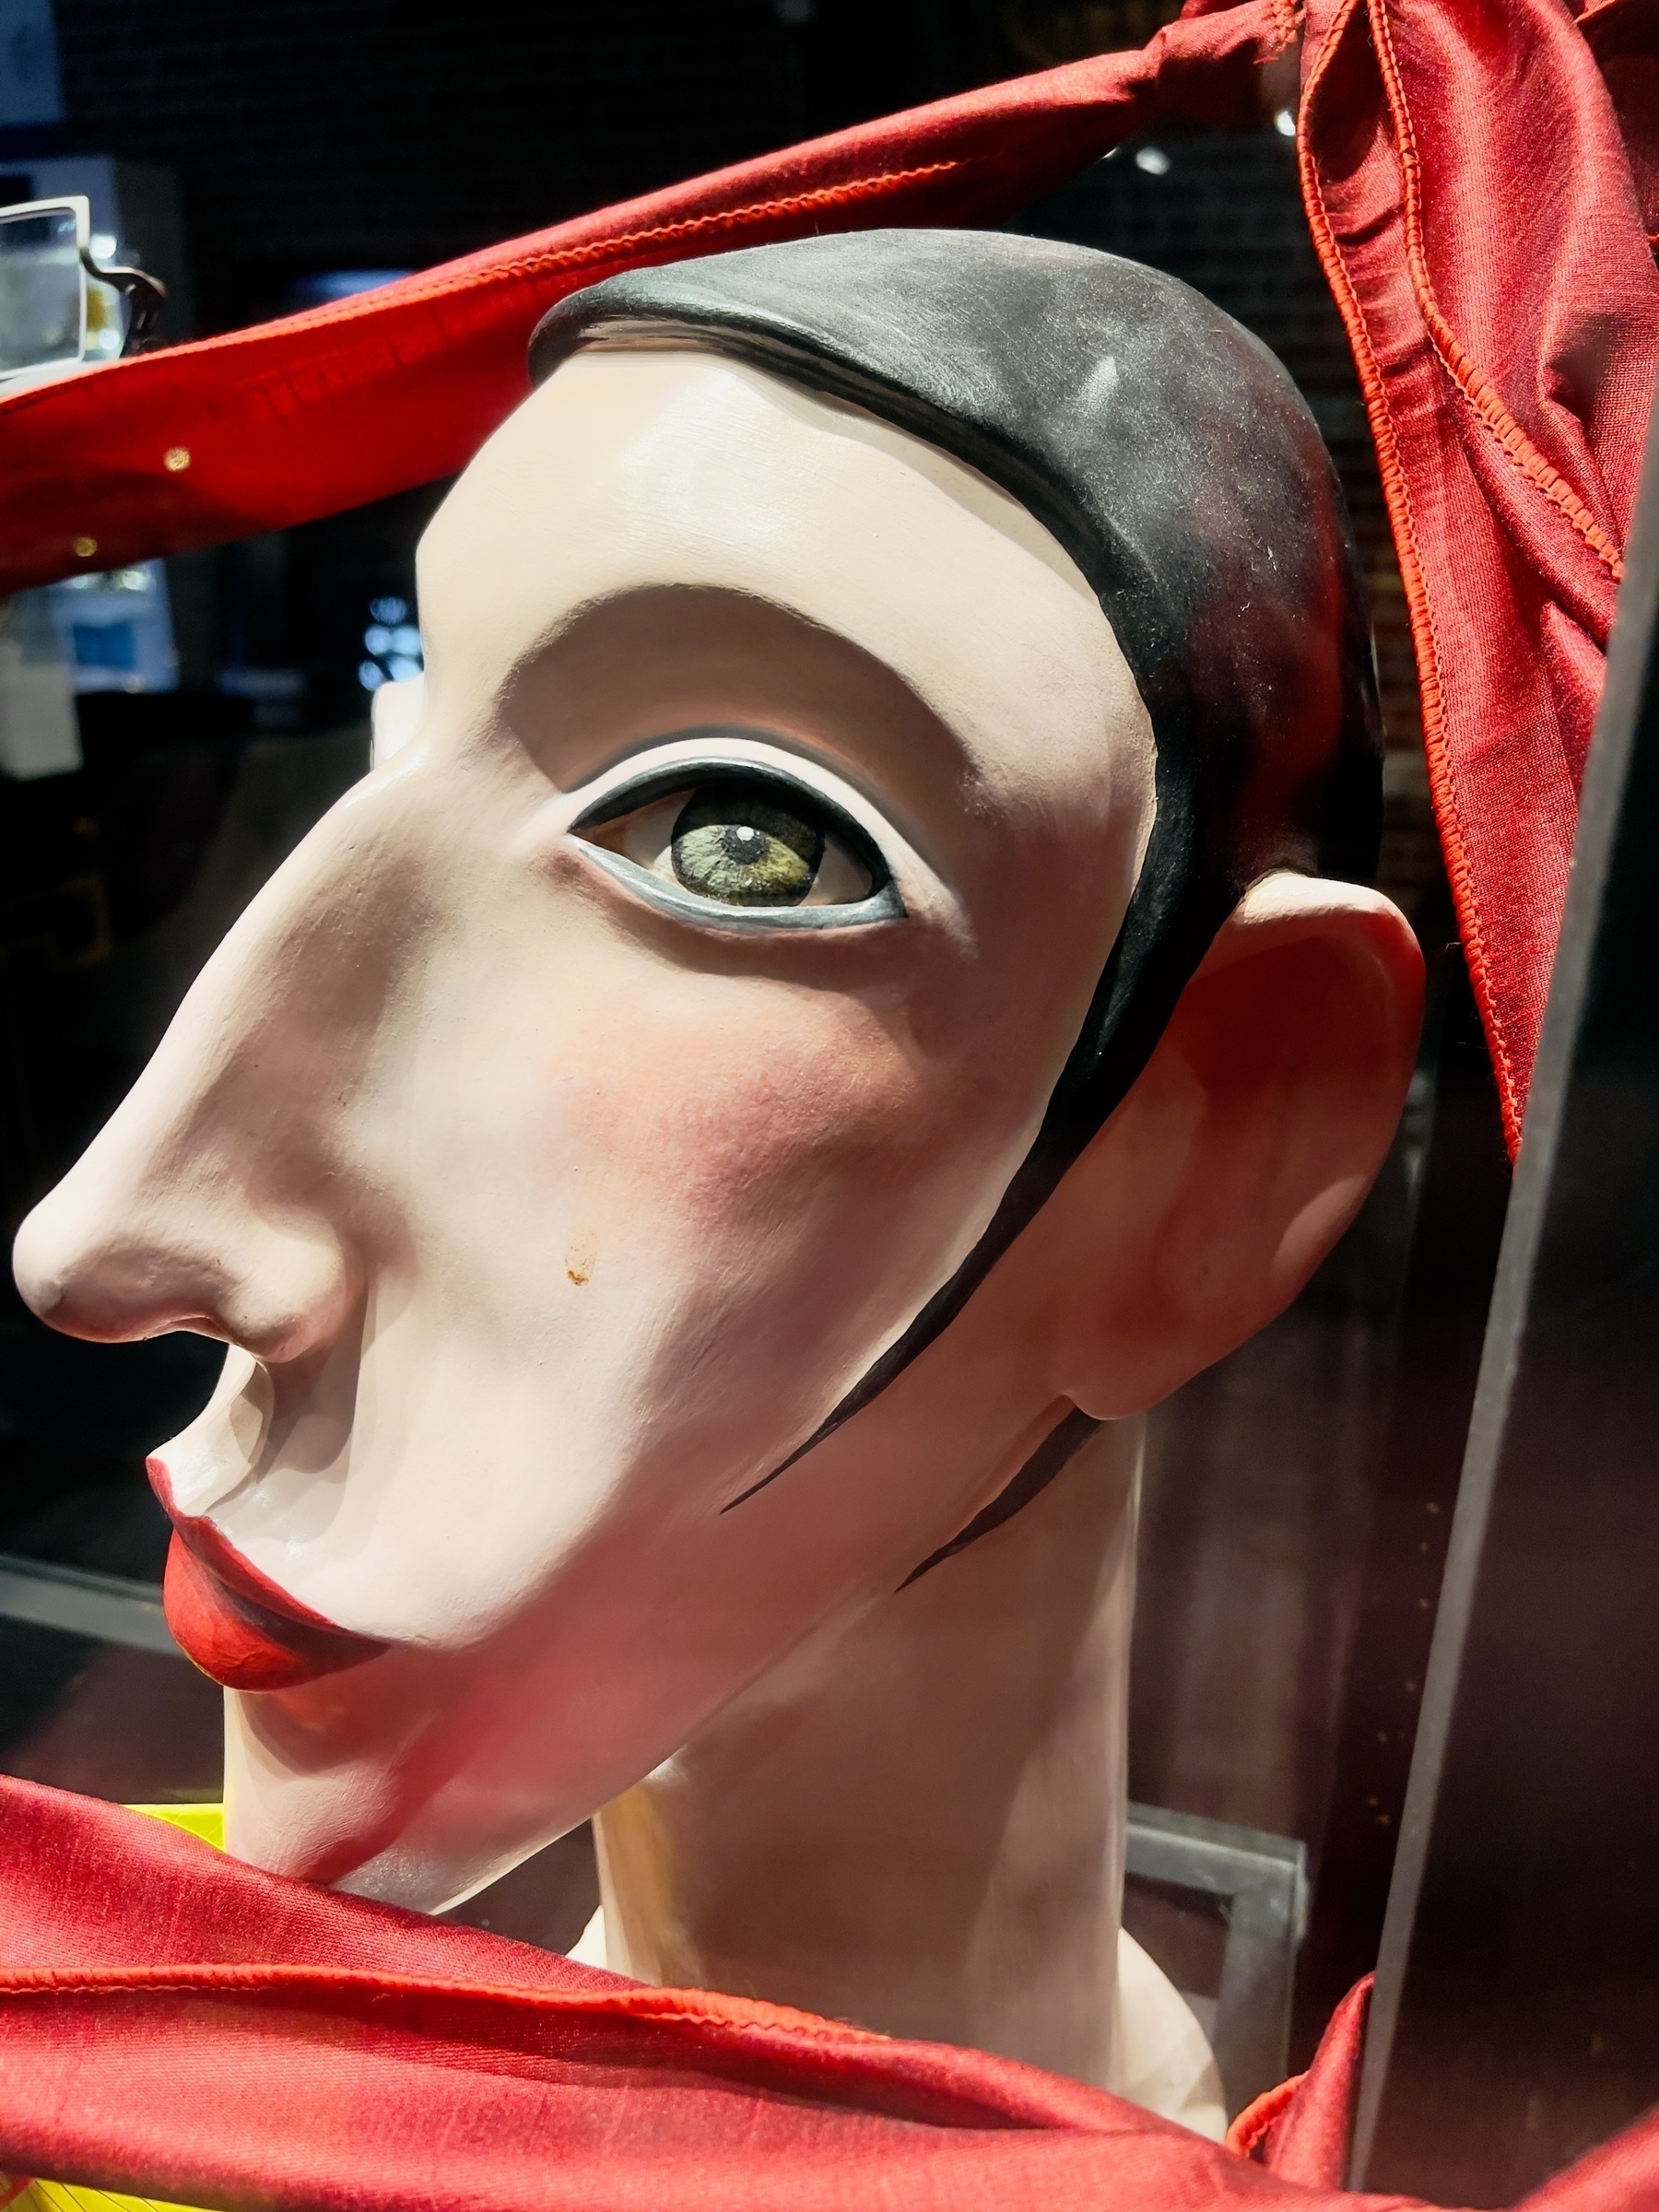 Stylized bust of woman in a shop window.